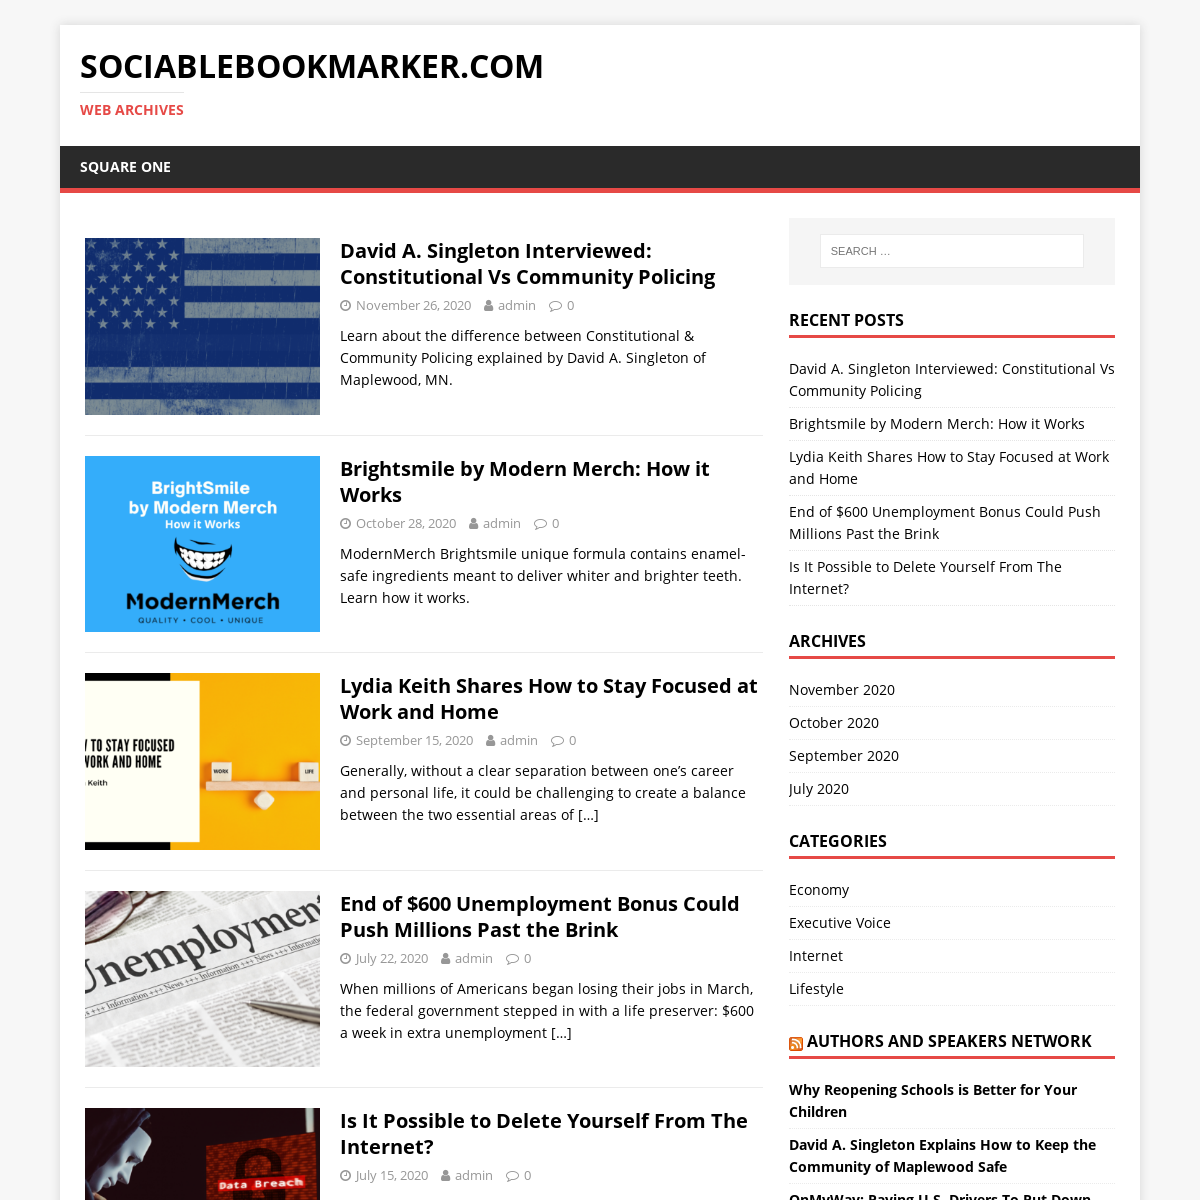 A complete backup of sociablebookmarker.com